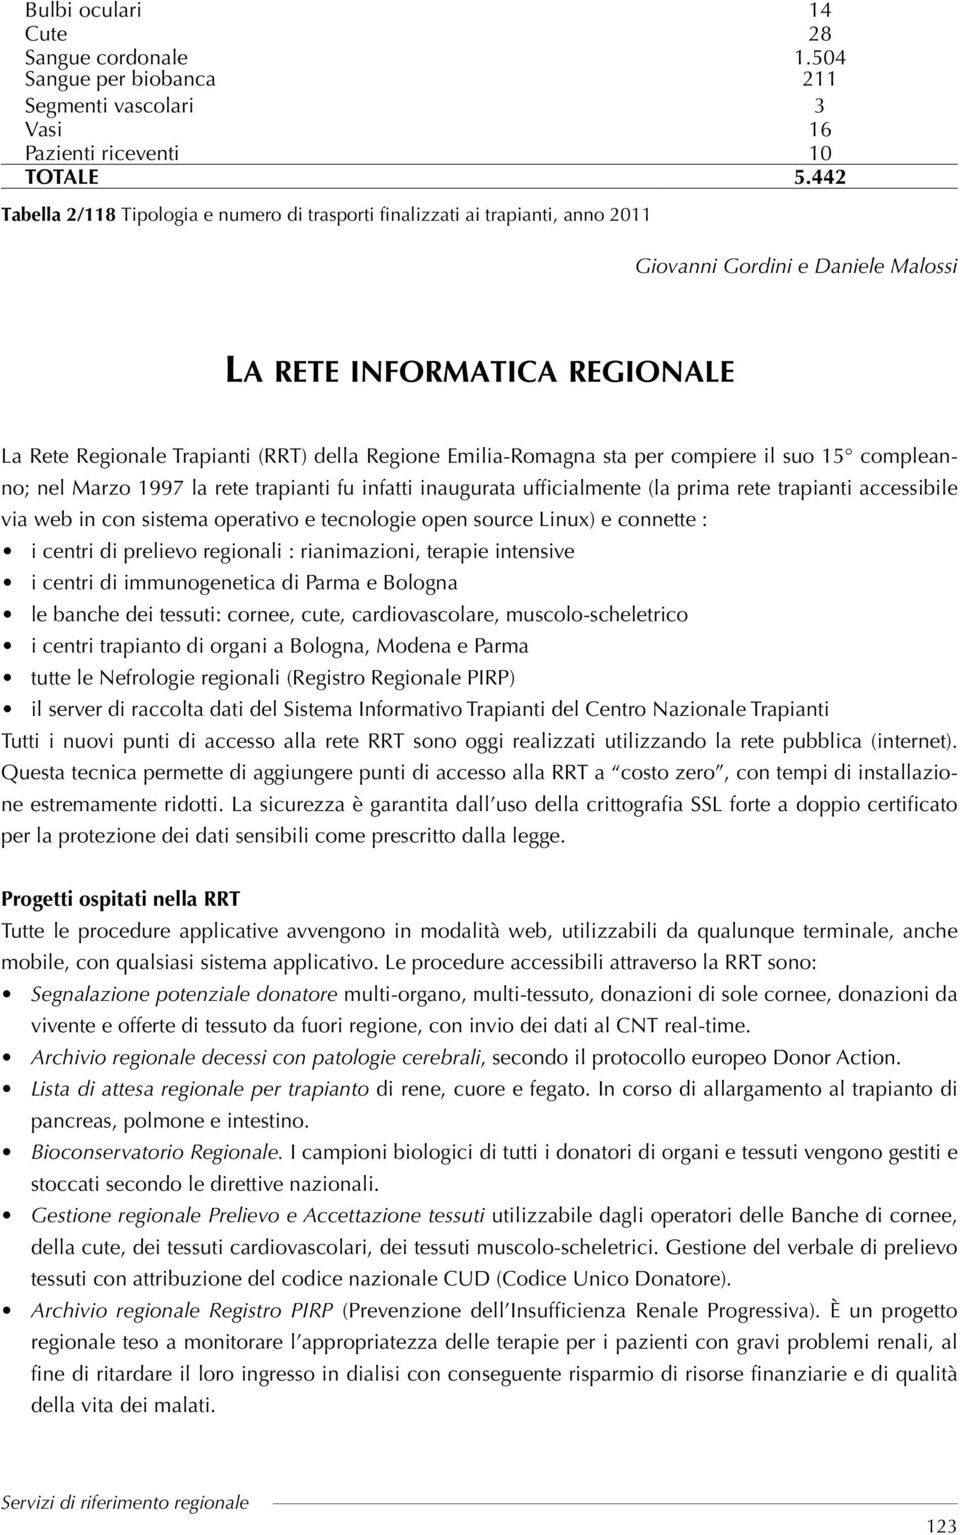 Emilia-Romagna sta per compiere il suo 15 compleanno; nel Marzo 1997 la rete trapianti fu infatti inaugurata ufficialmente (la prima rete trapianti accessibile via web in con sistema operativo e